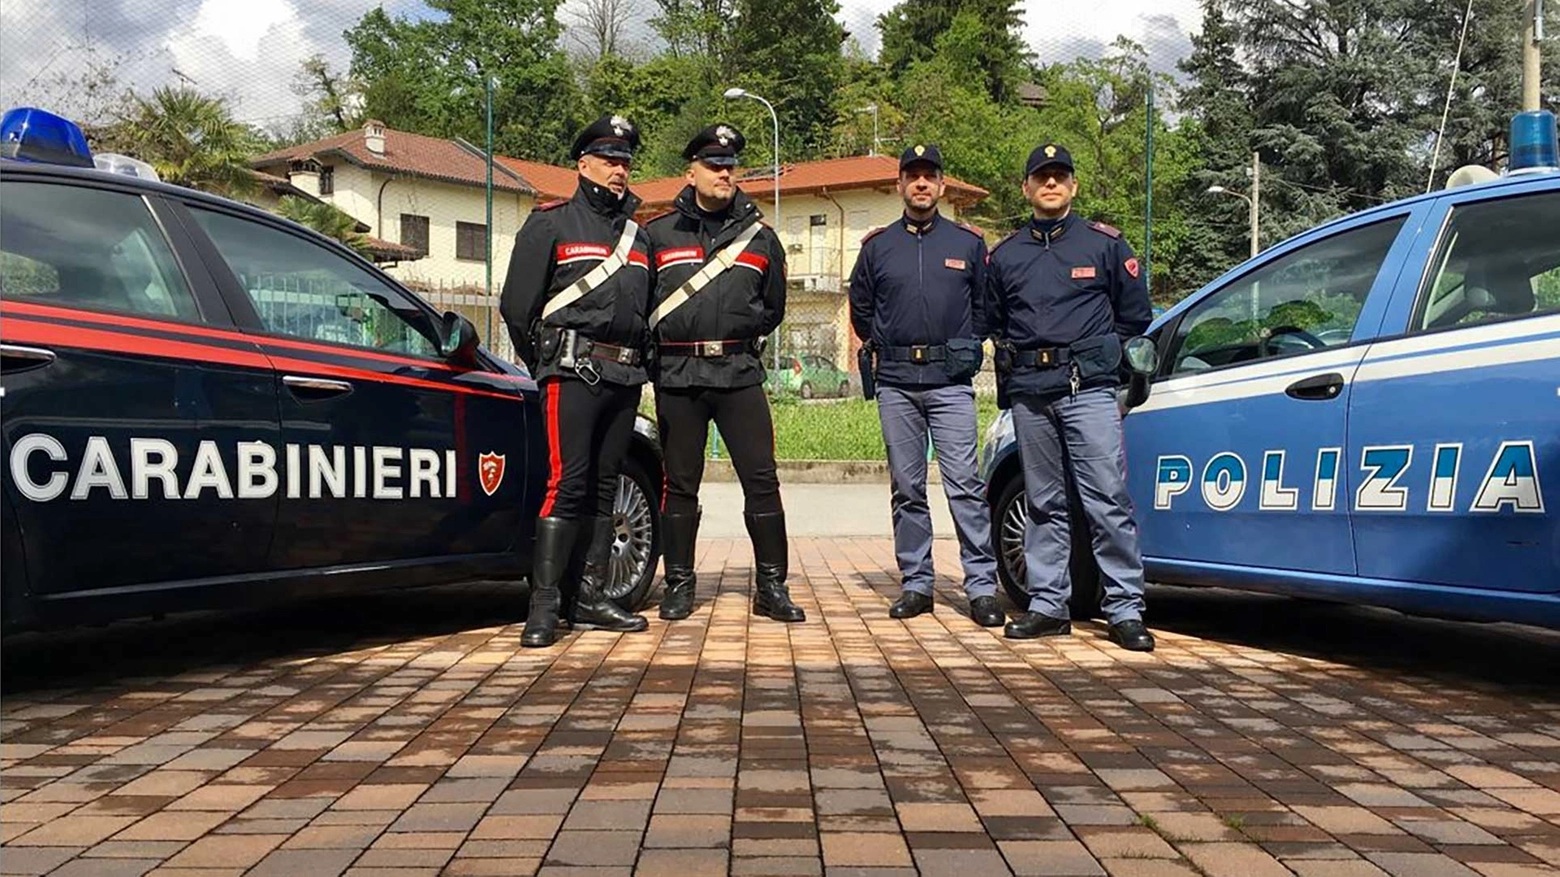 In azione polizia e carabinieri